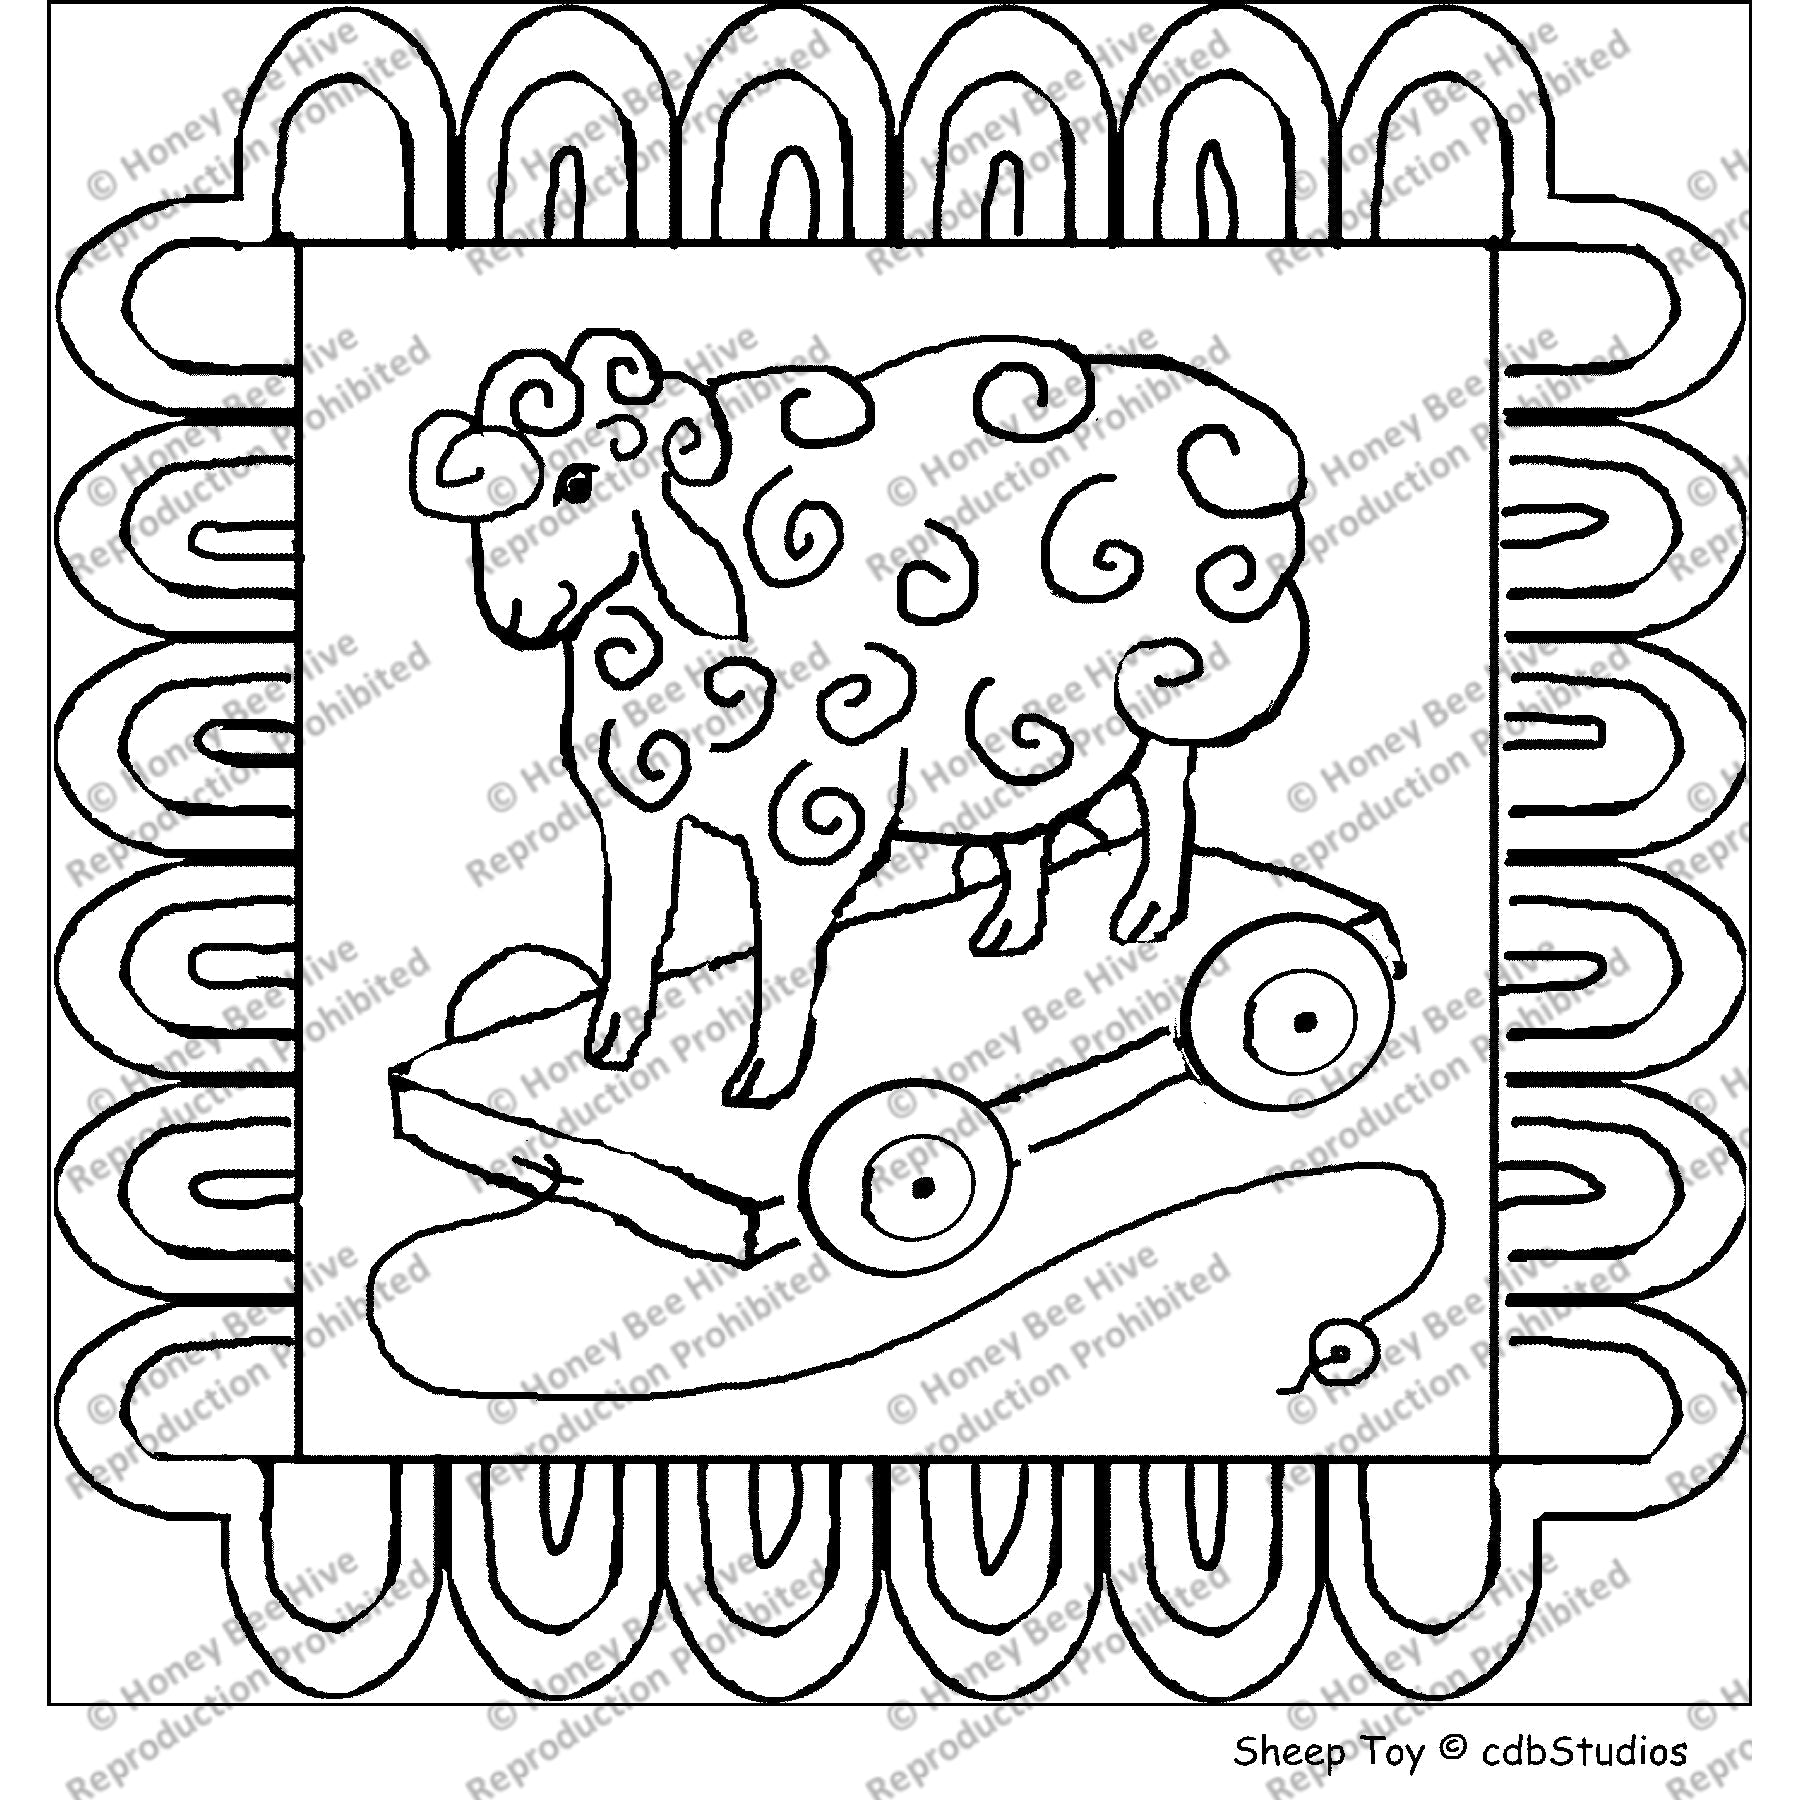 Sheep Toy, rug hooking pattern